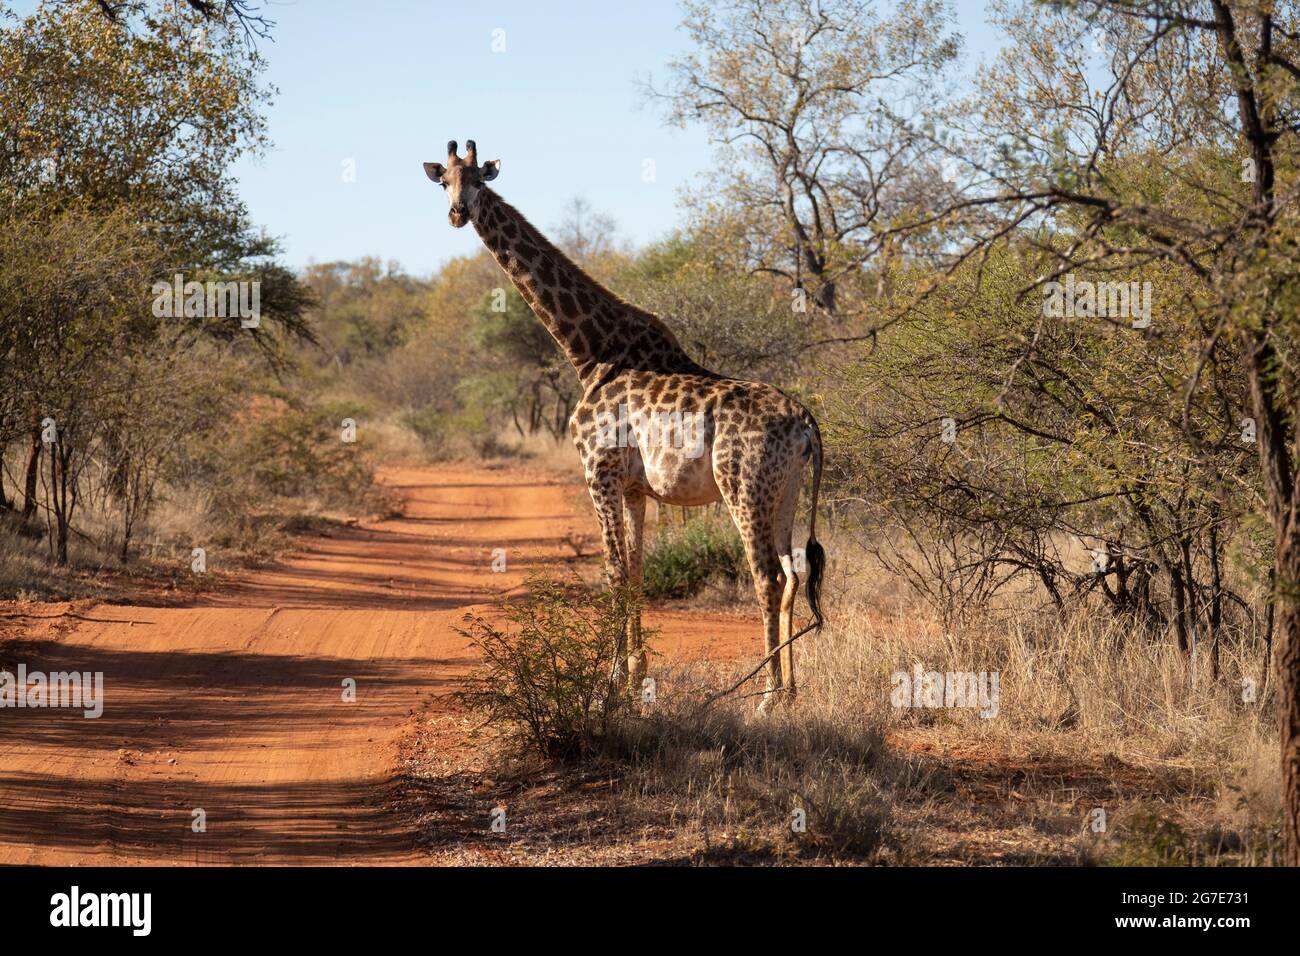 Girafe debout près d'une route de terre. Banque D'Images